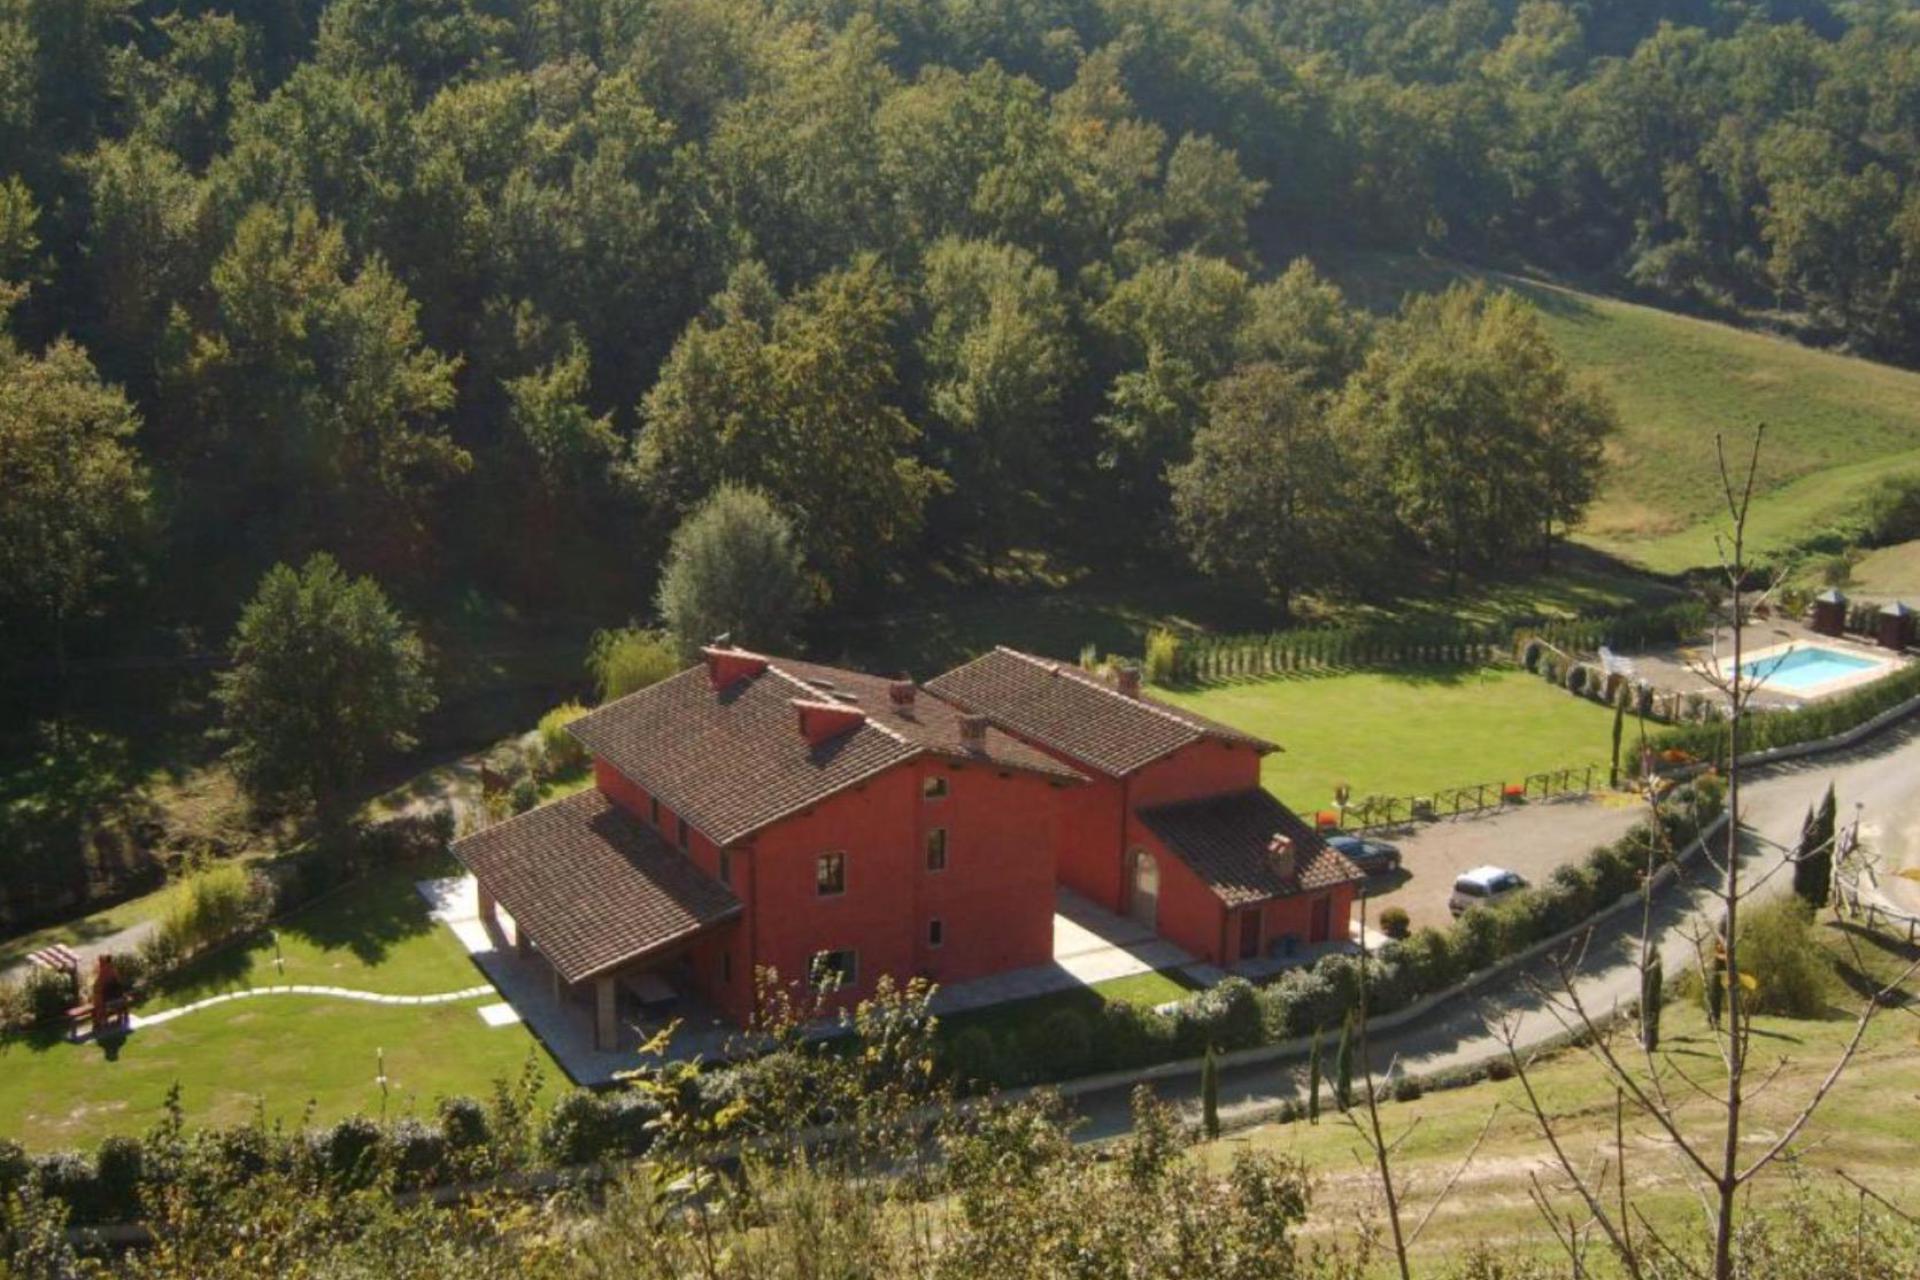 Agriturismo mit großem und kleinem Ferienhaus auf herrlichem Landgut Nähe Florenz